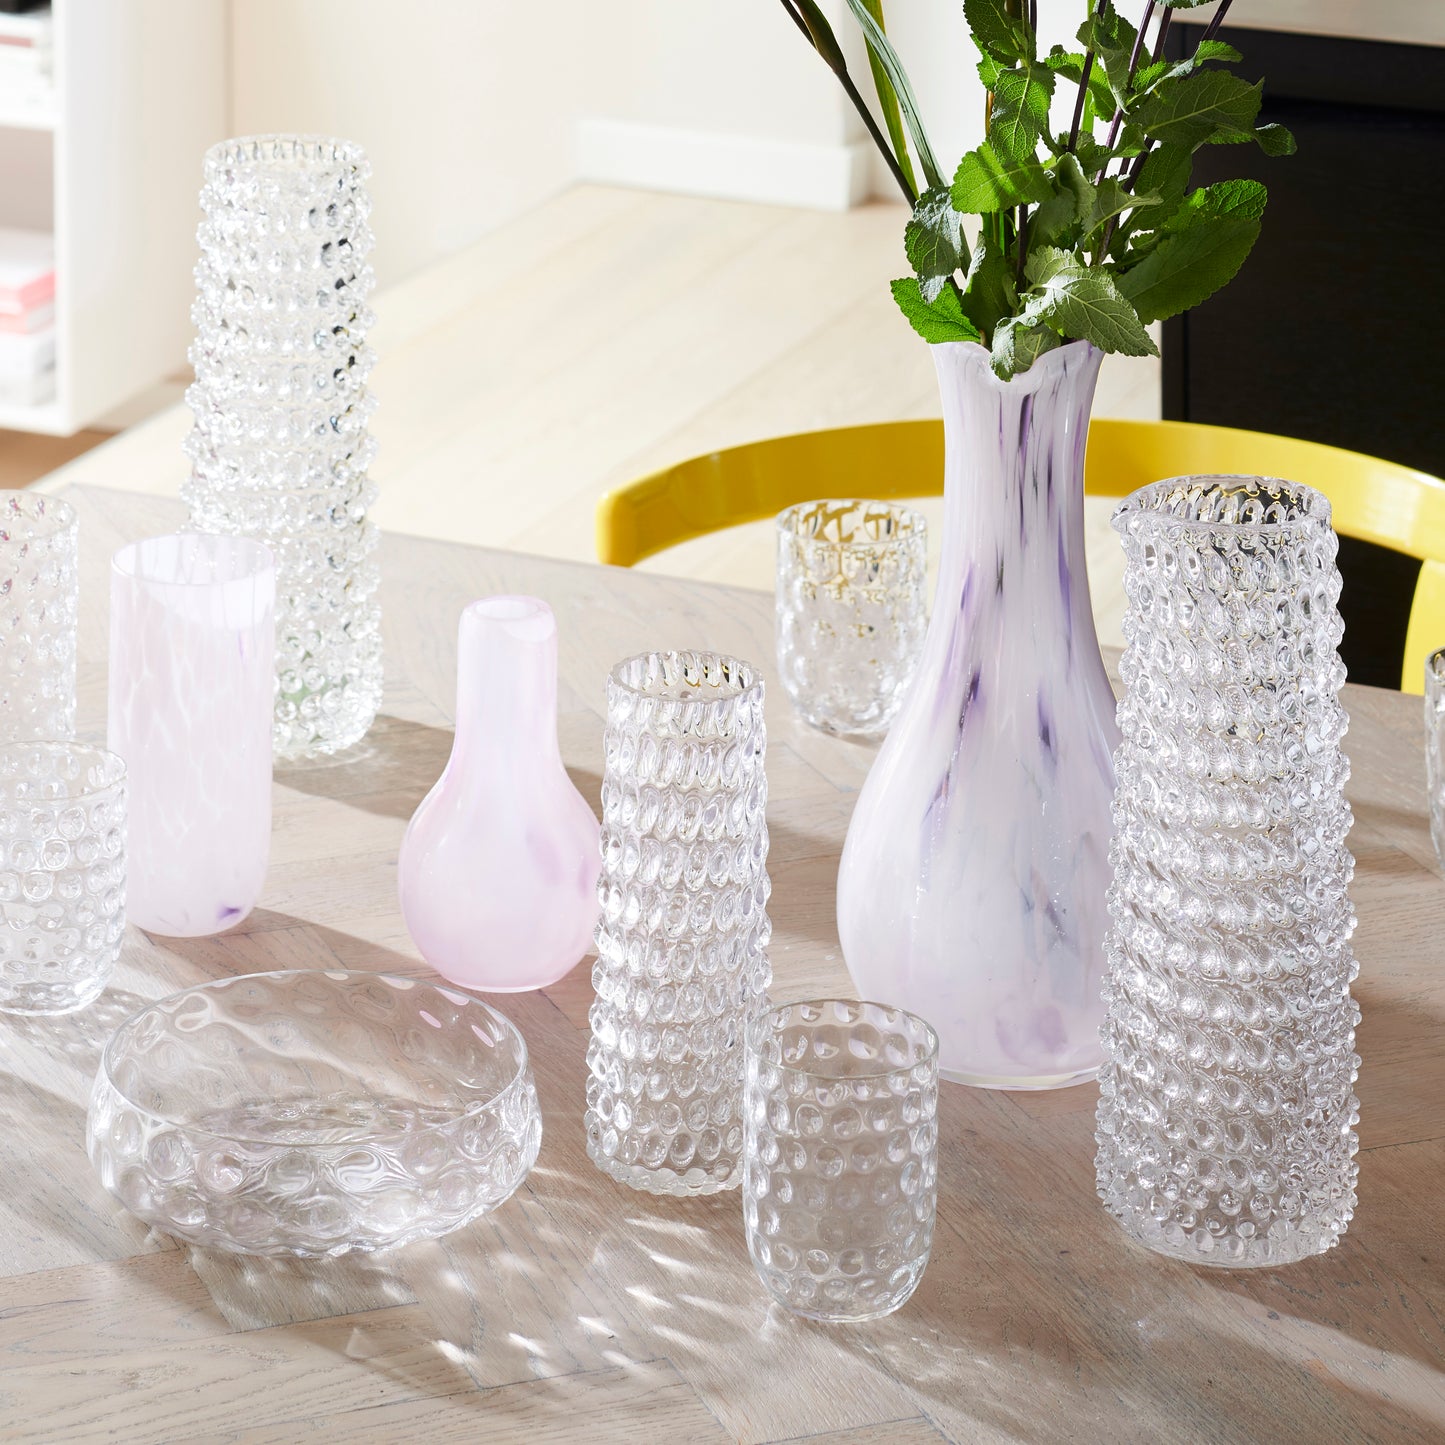 Kodanska Danish Summer Karaffel Carafe / Vase Clear